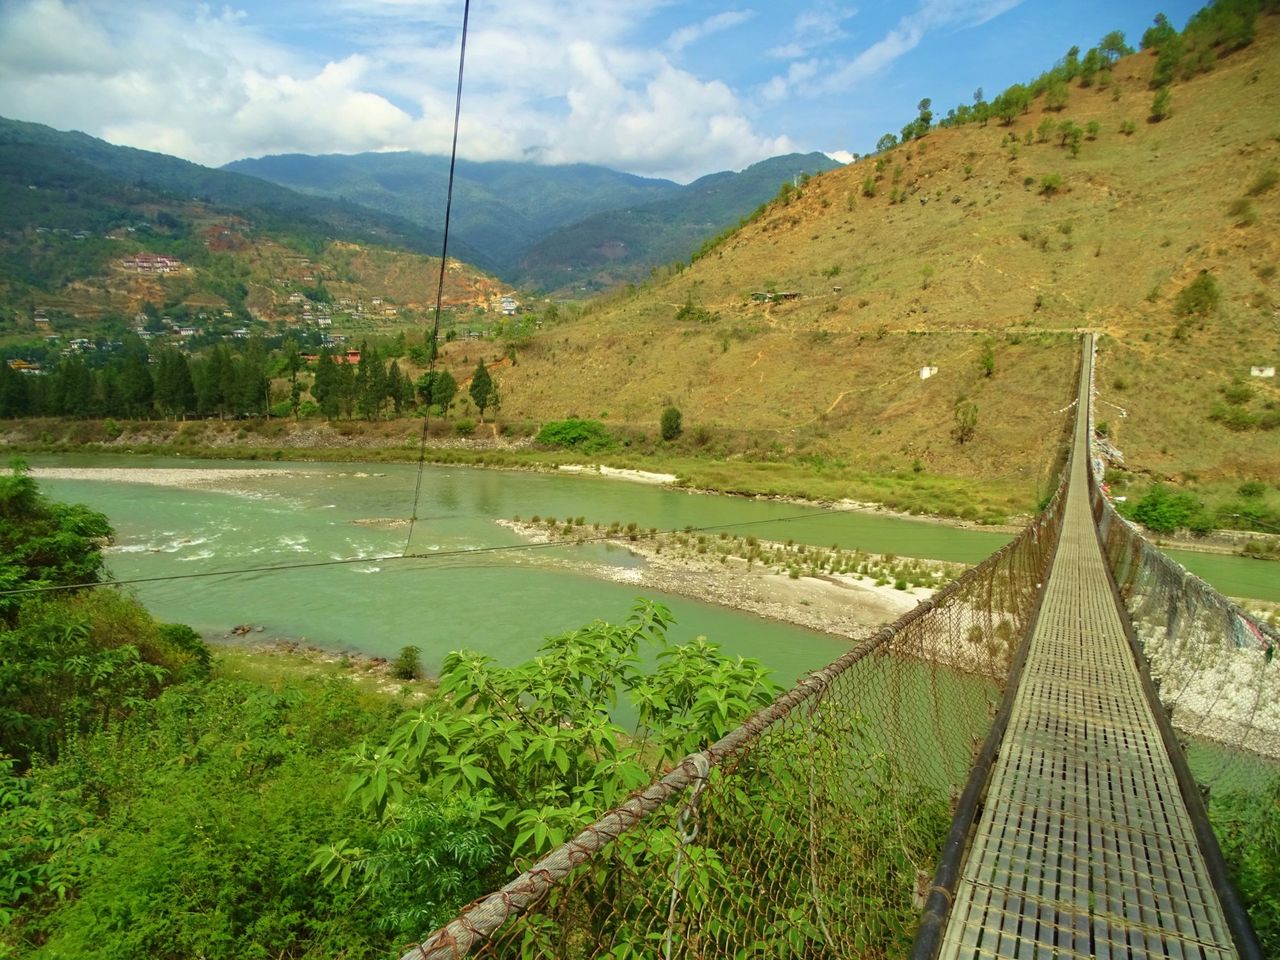 Cruzando el Puente de Bambú Místico de Bután.